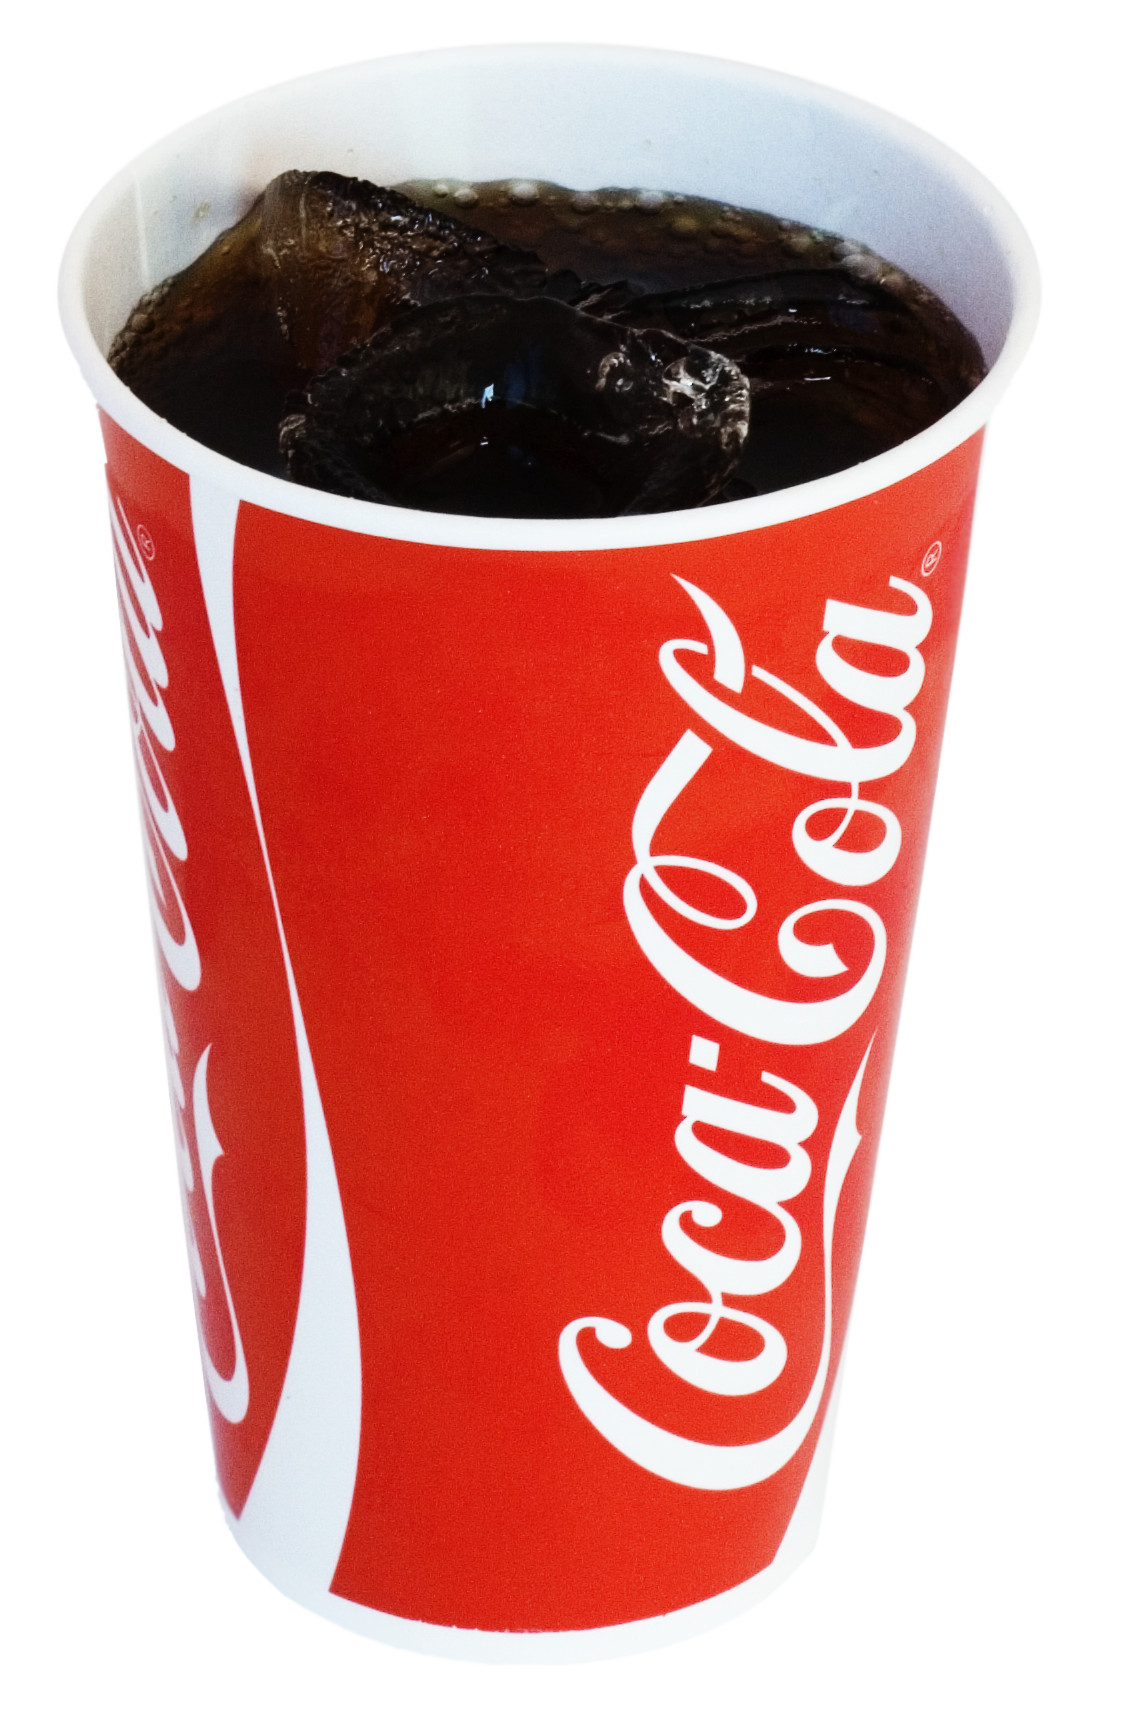 ¿Es cierto que si dejas un diente en Coca Cola se disuelve?